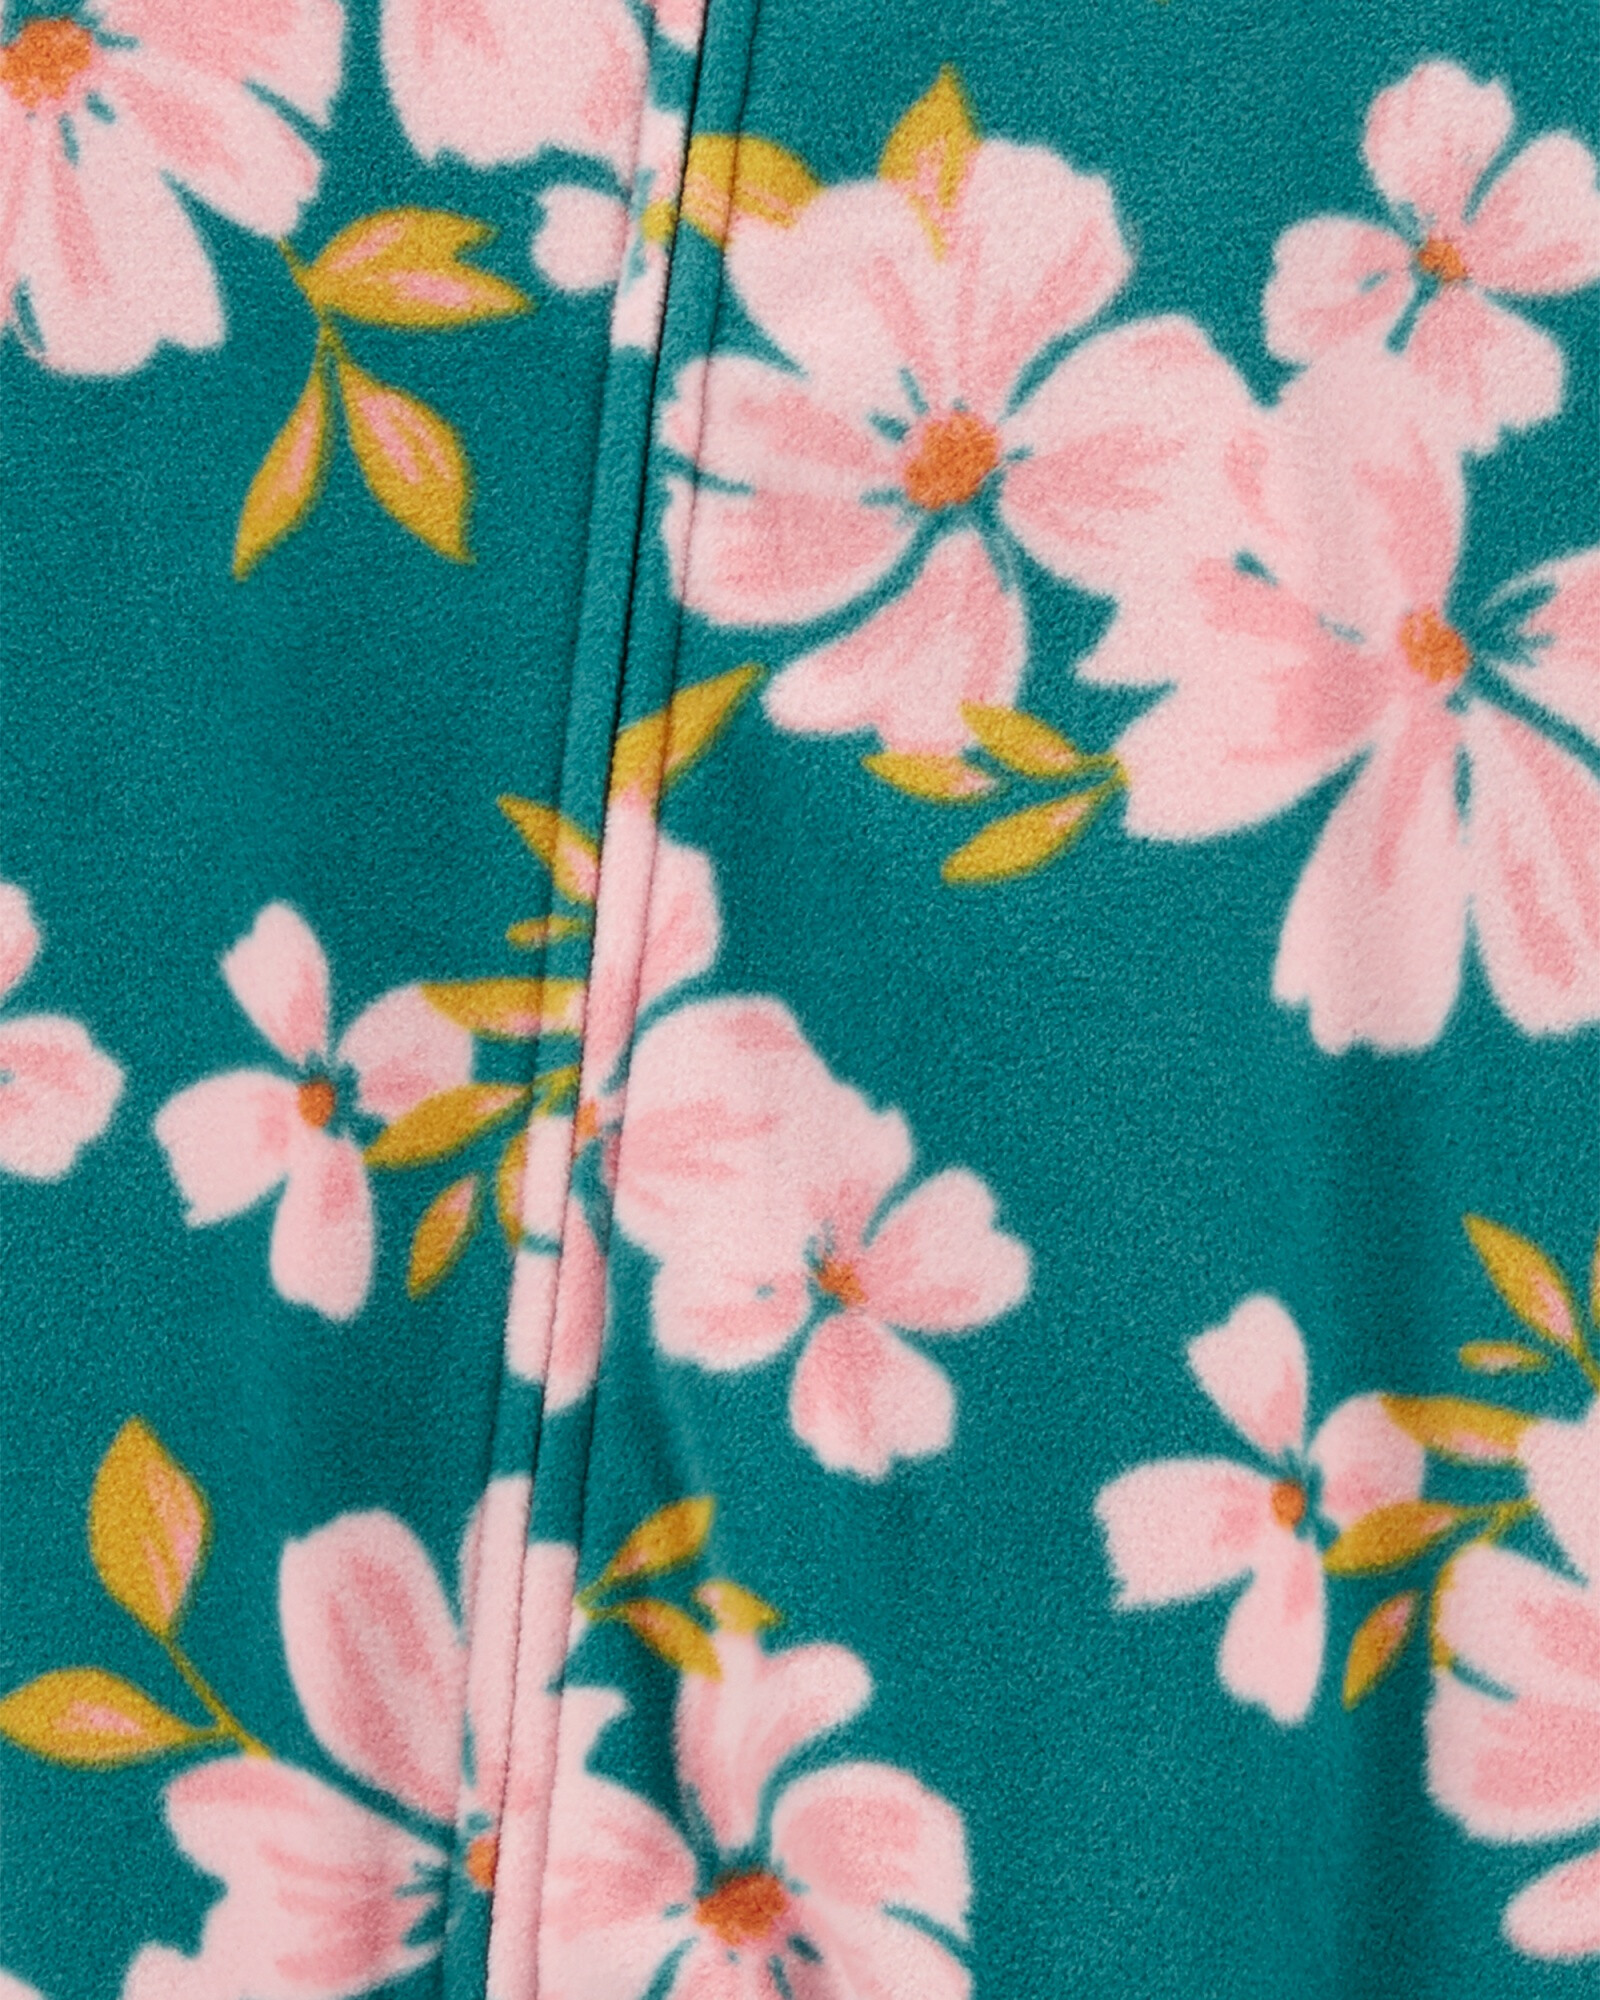 Pijama una pieza de micropolar diseño floral Sin color